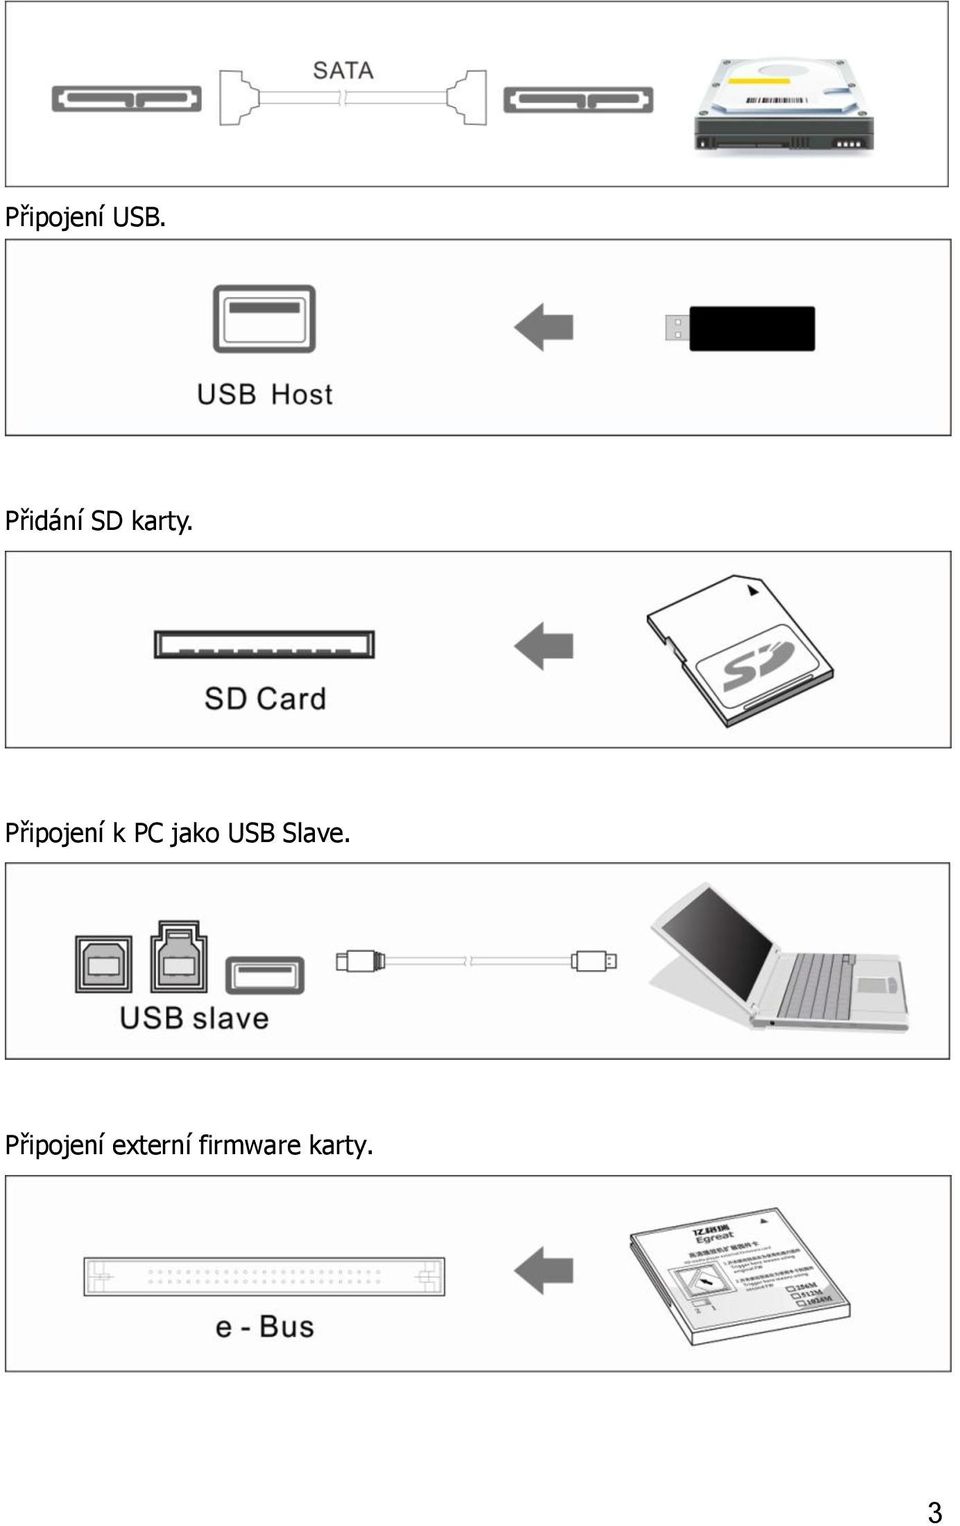 Připojení k PC jako USB